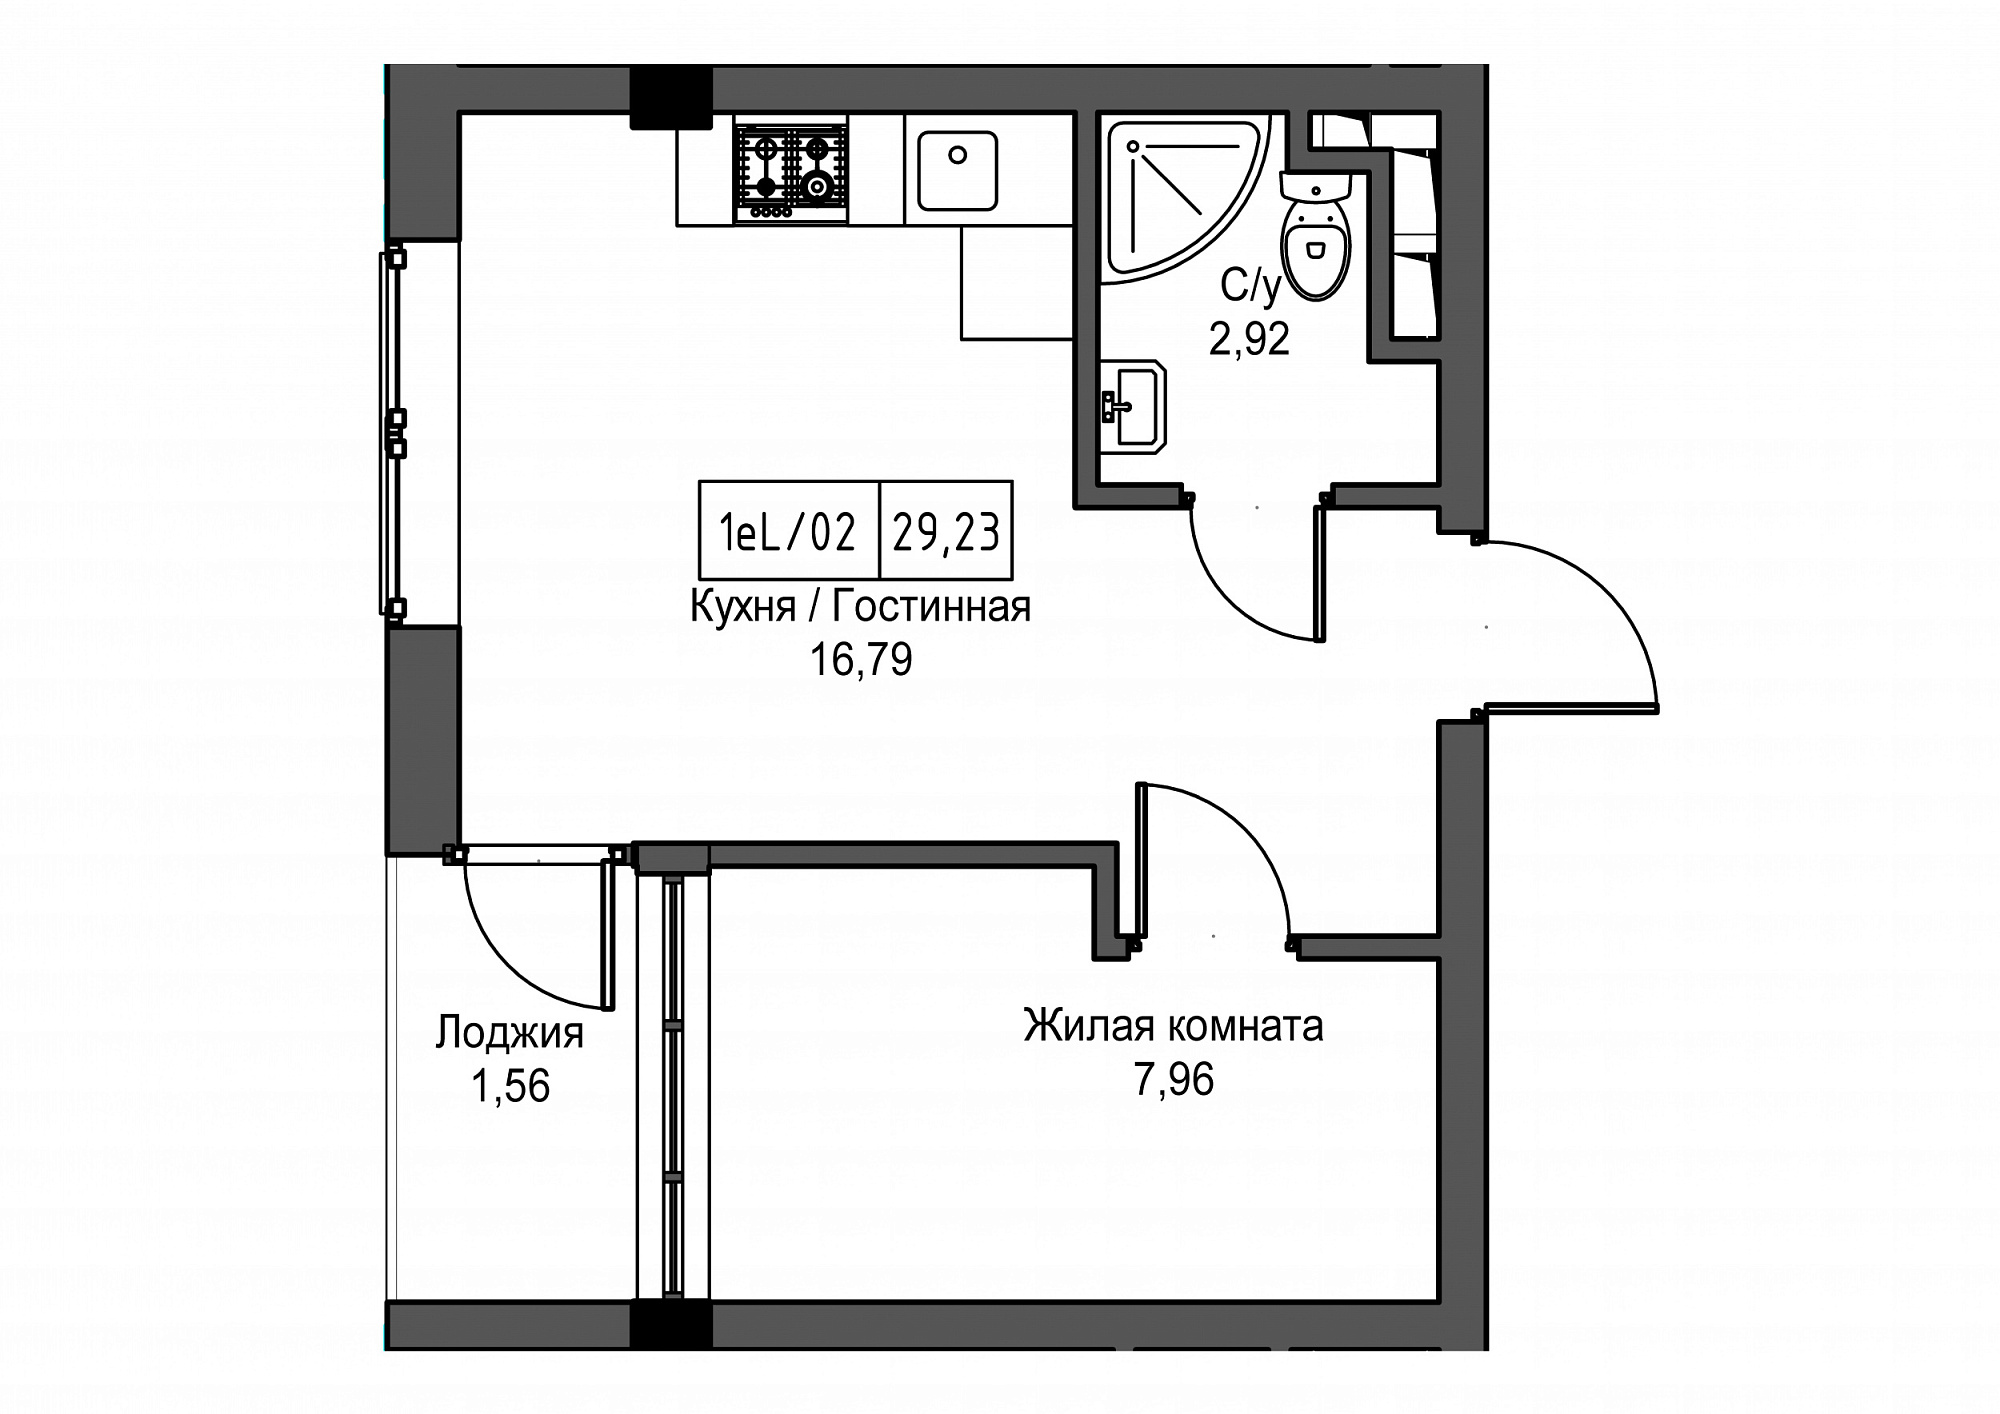 Планировка 1-к квартира площей 29.23м2, UM-002-02/0098.